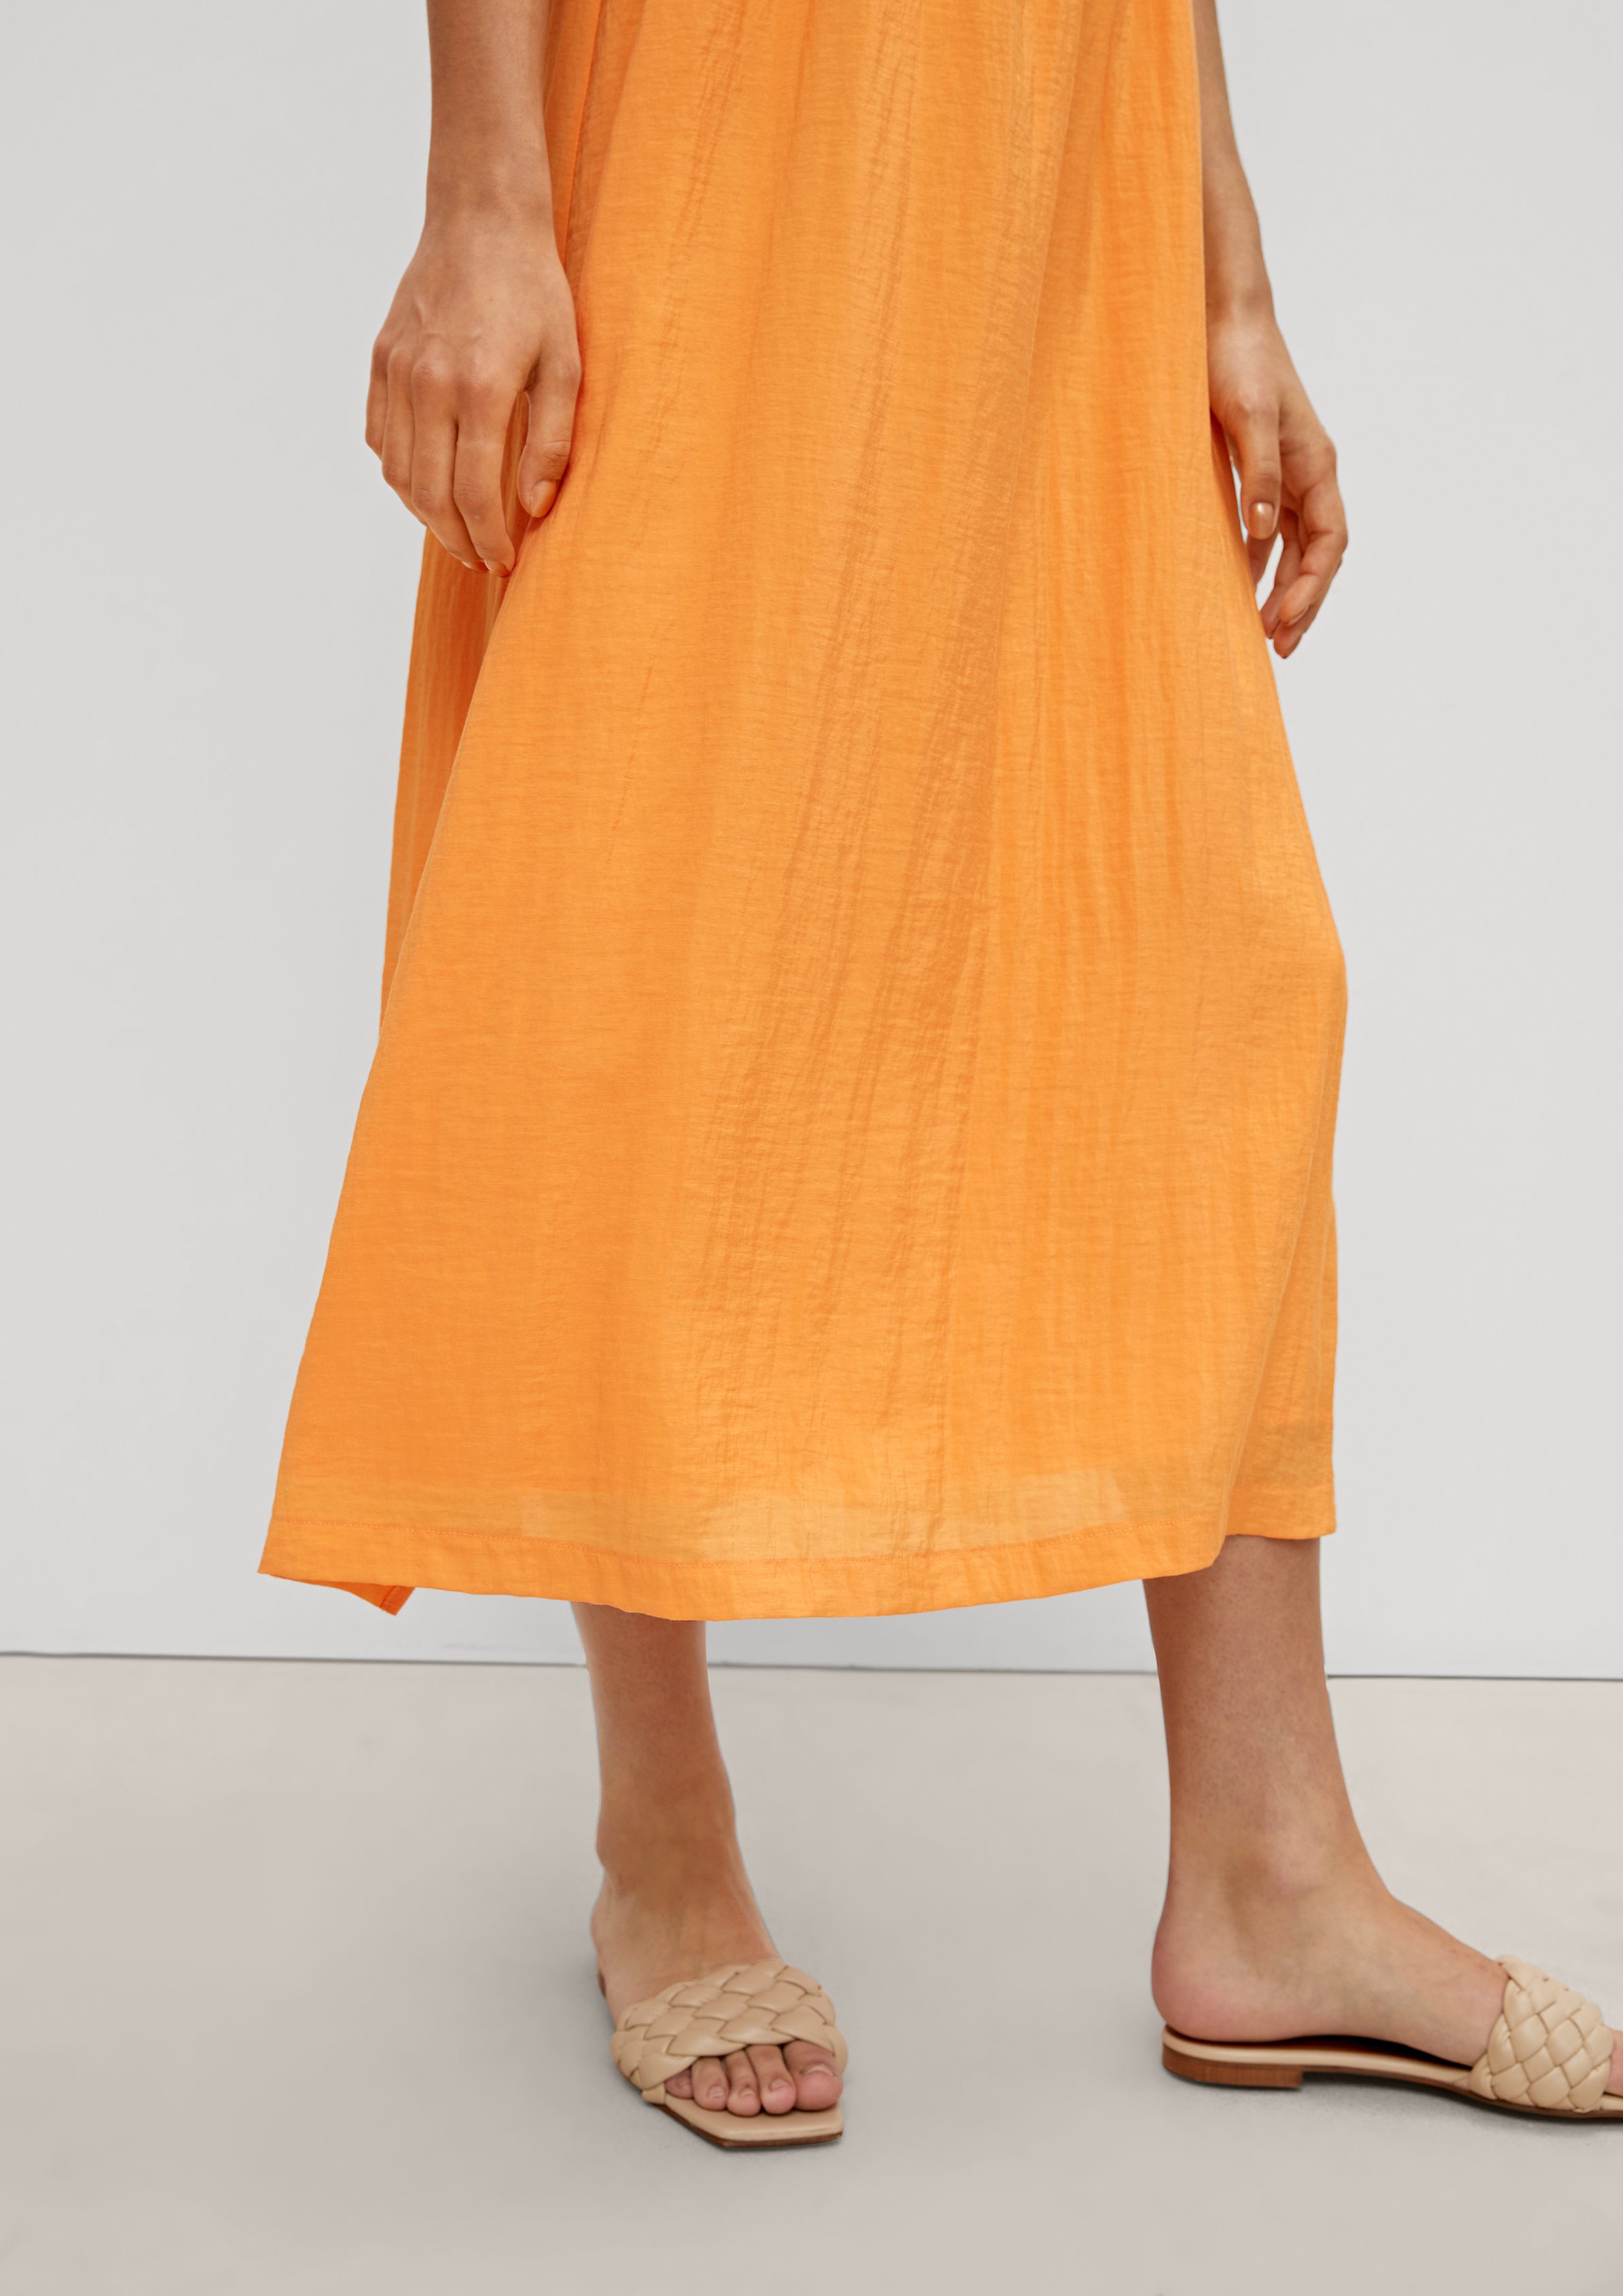 Comma Maxikleid Midi-Kleid mit Rüschendetail Rüschen peach Raffung, frozen